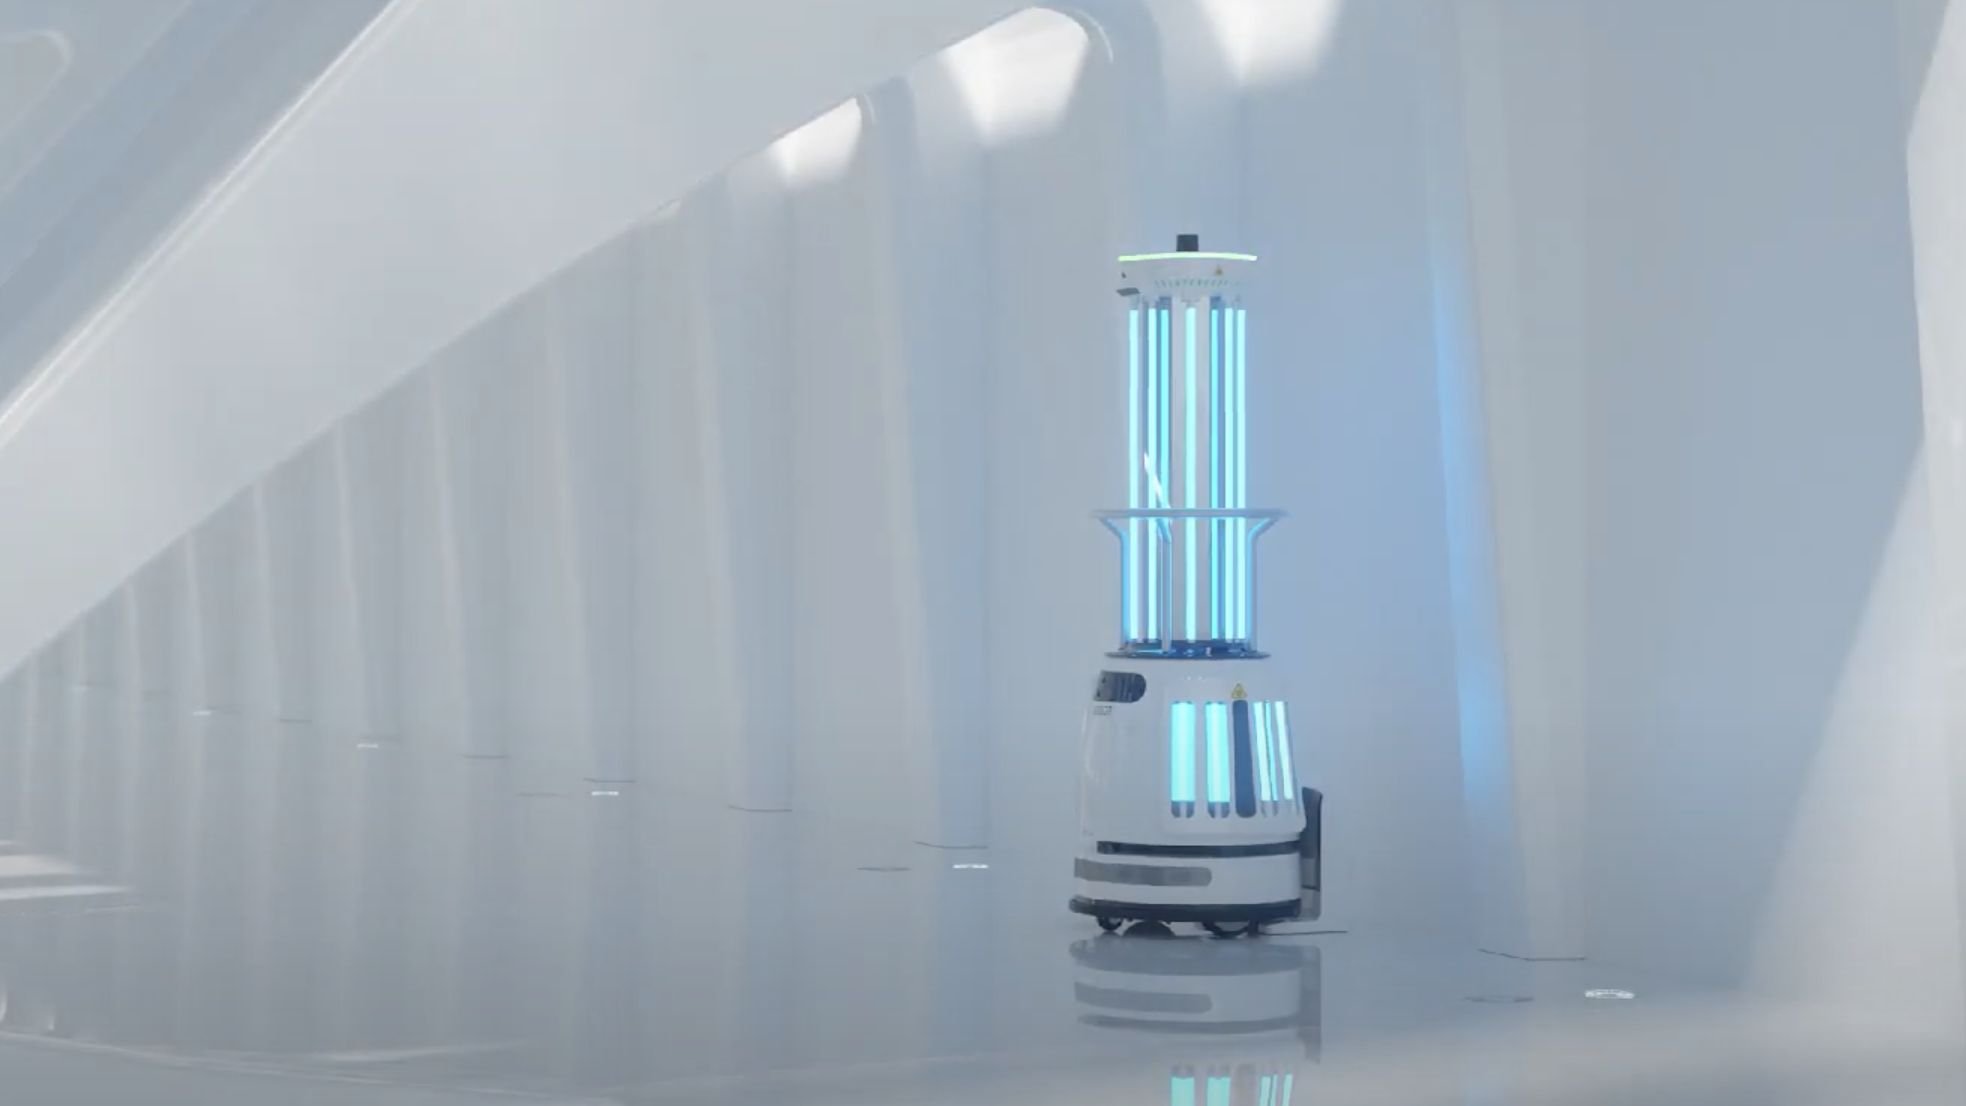 O Ubtech Adibot-A irradia luz UV-C para desinfetar espaços que possam estar contaminados